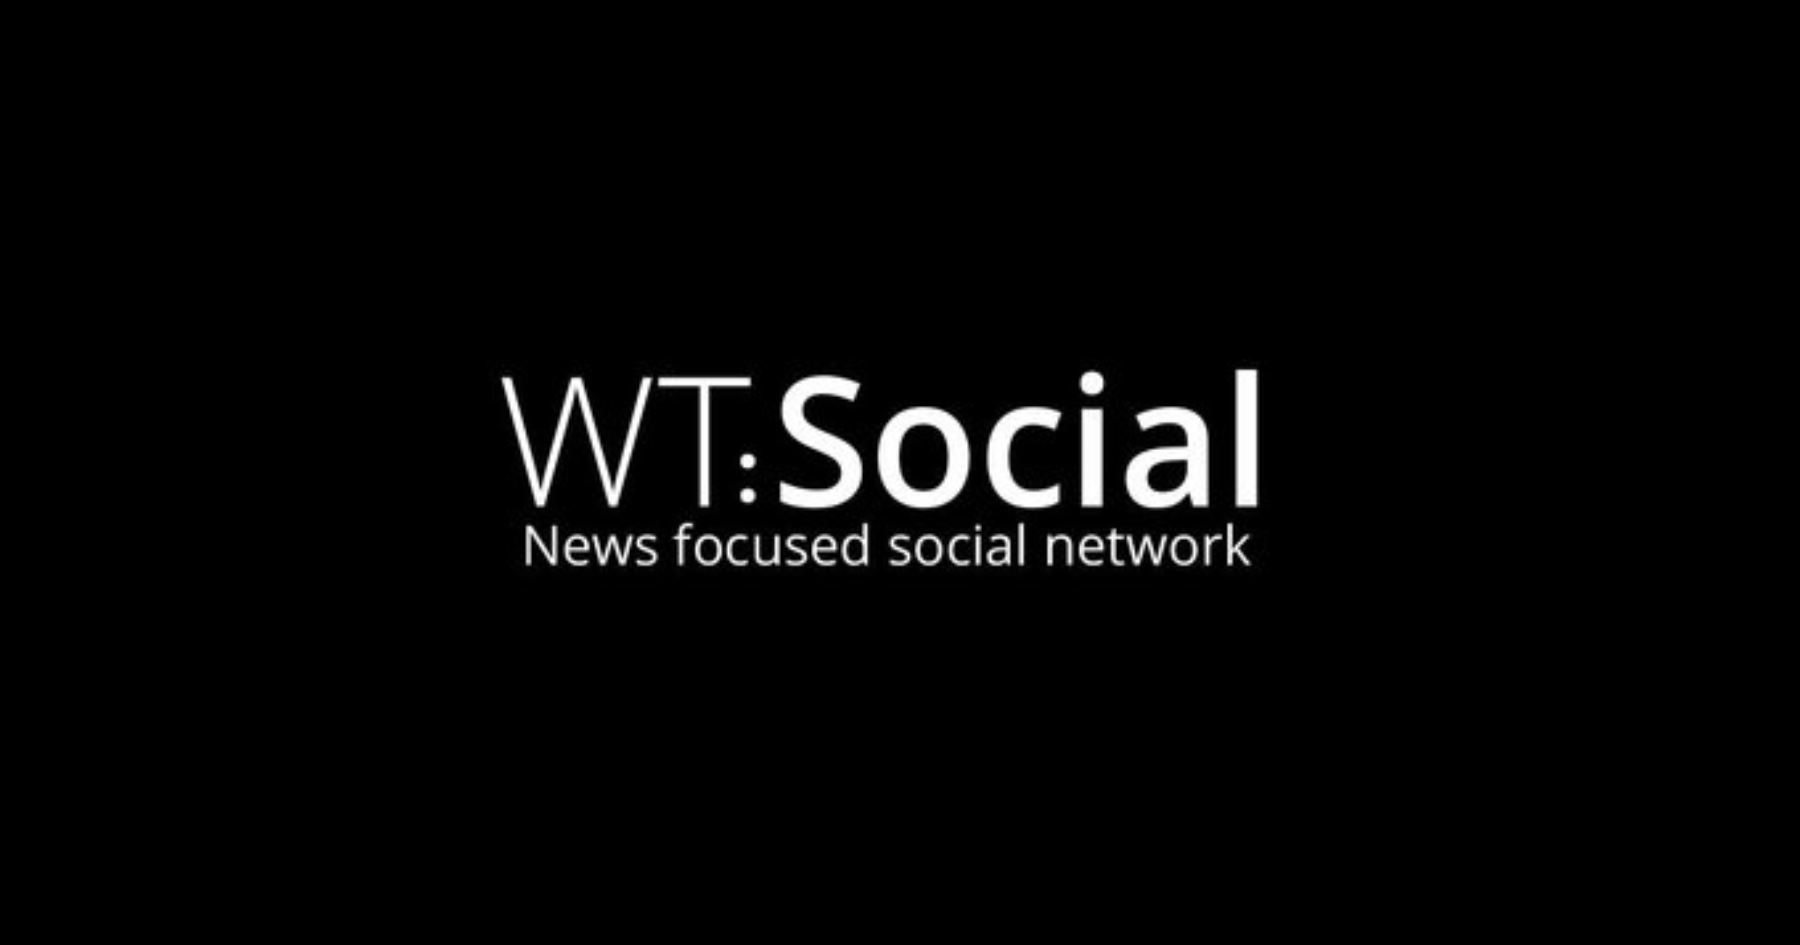 WT.Social  se define como una "red social inventiva basada en noticias" con una comunidad enfocada en el periodismo de calidad.